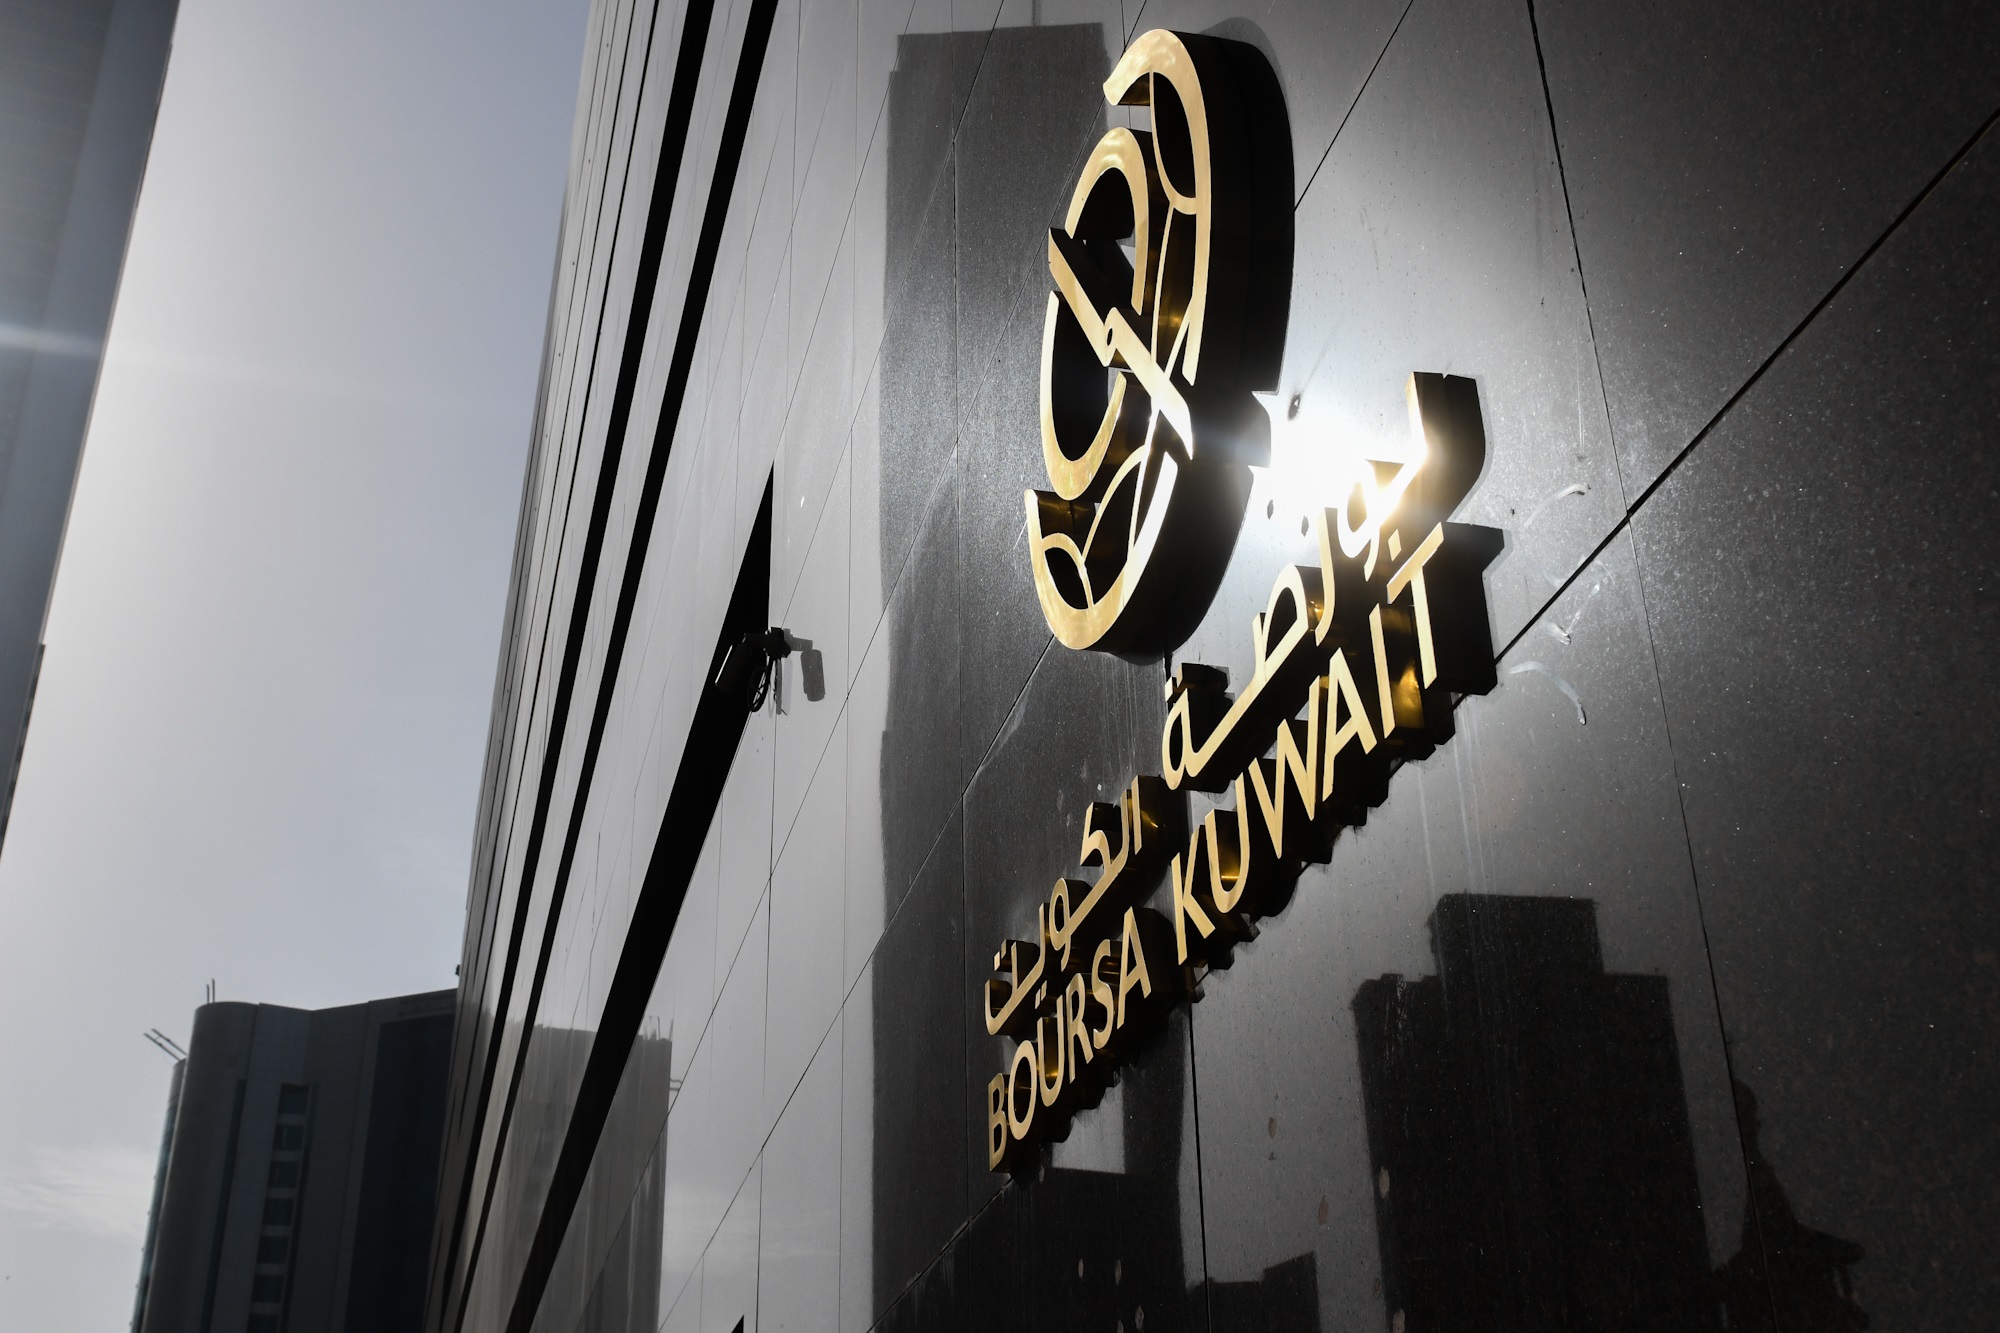 بورصة الكويت تغلق تعاملاتها على انخفاض مؤشرها العام 8ر16 نقطة ليبلغ 59ر7558 بنسبة 22ر0 في المئة                                                                                                                                                           